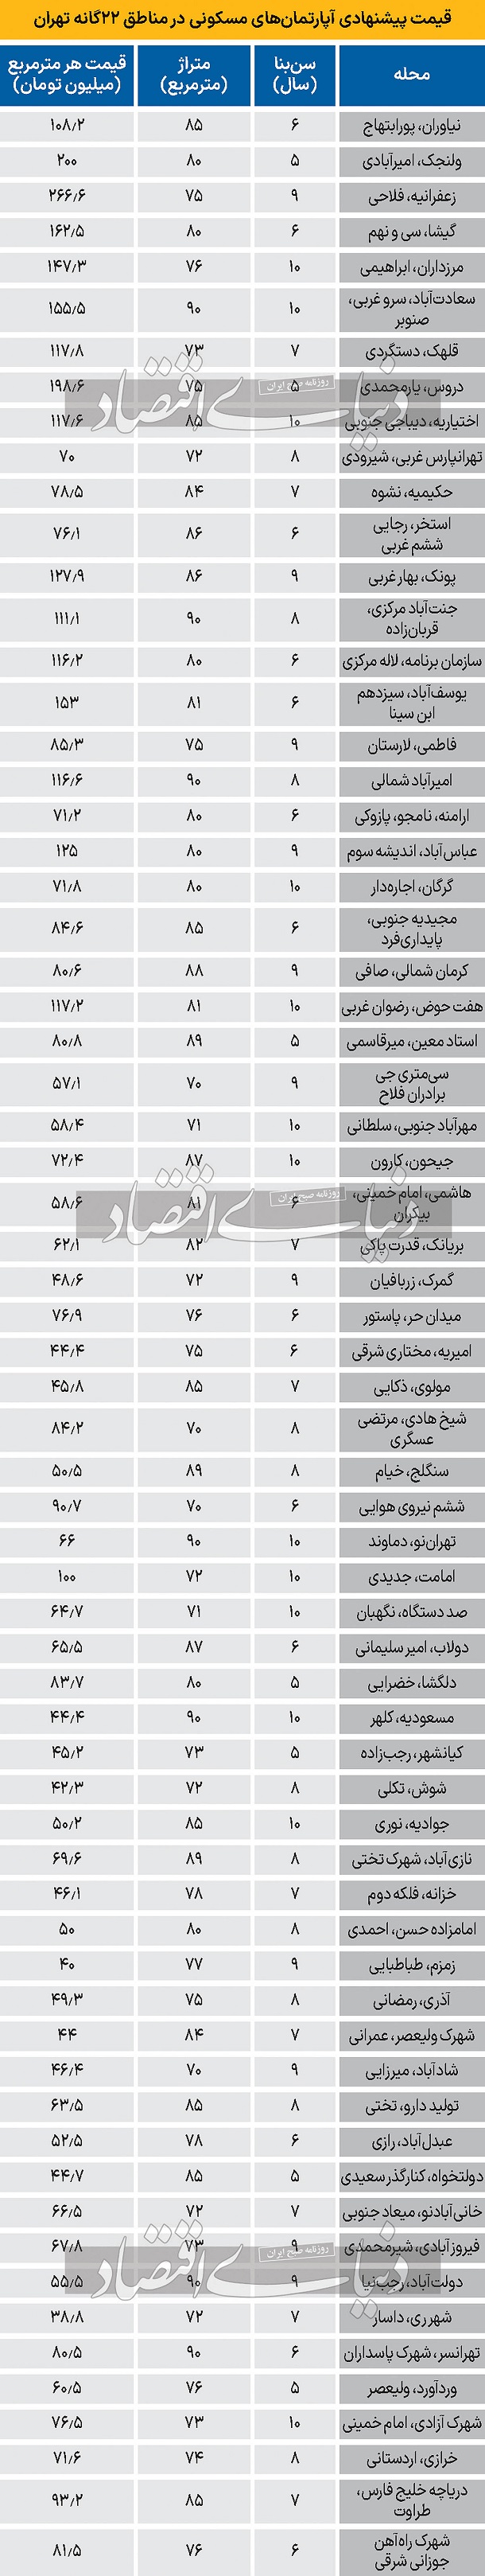 لیست قیمت آپارتمان شهر تهران